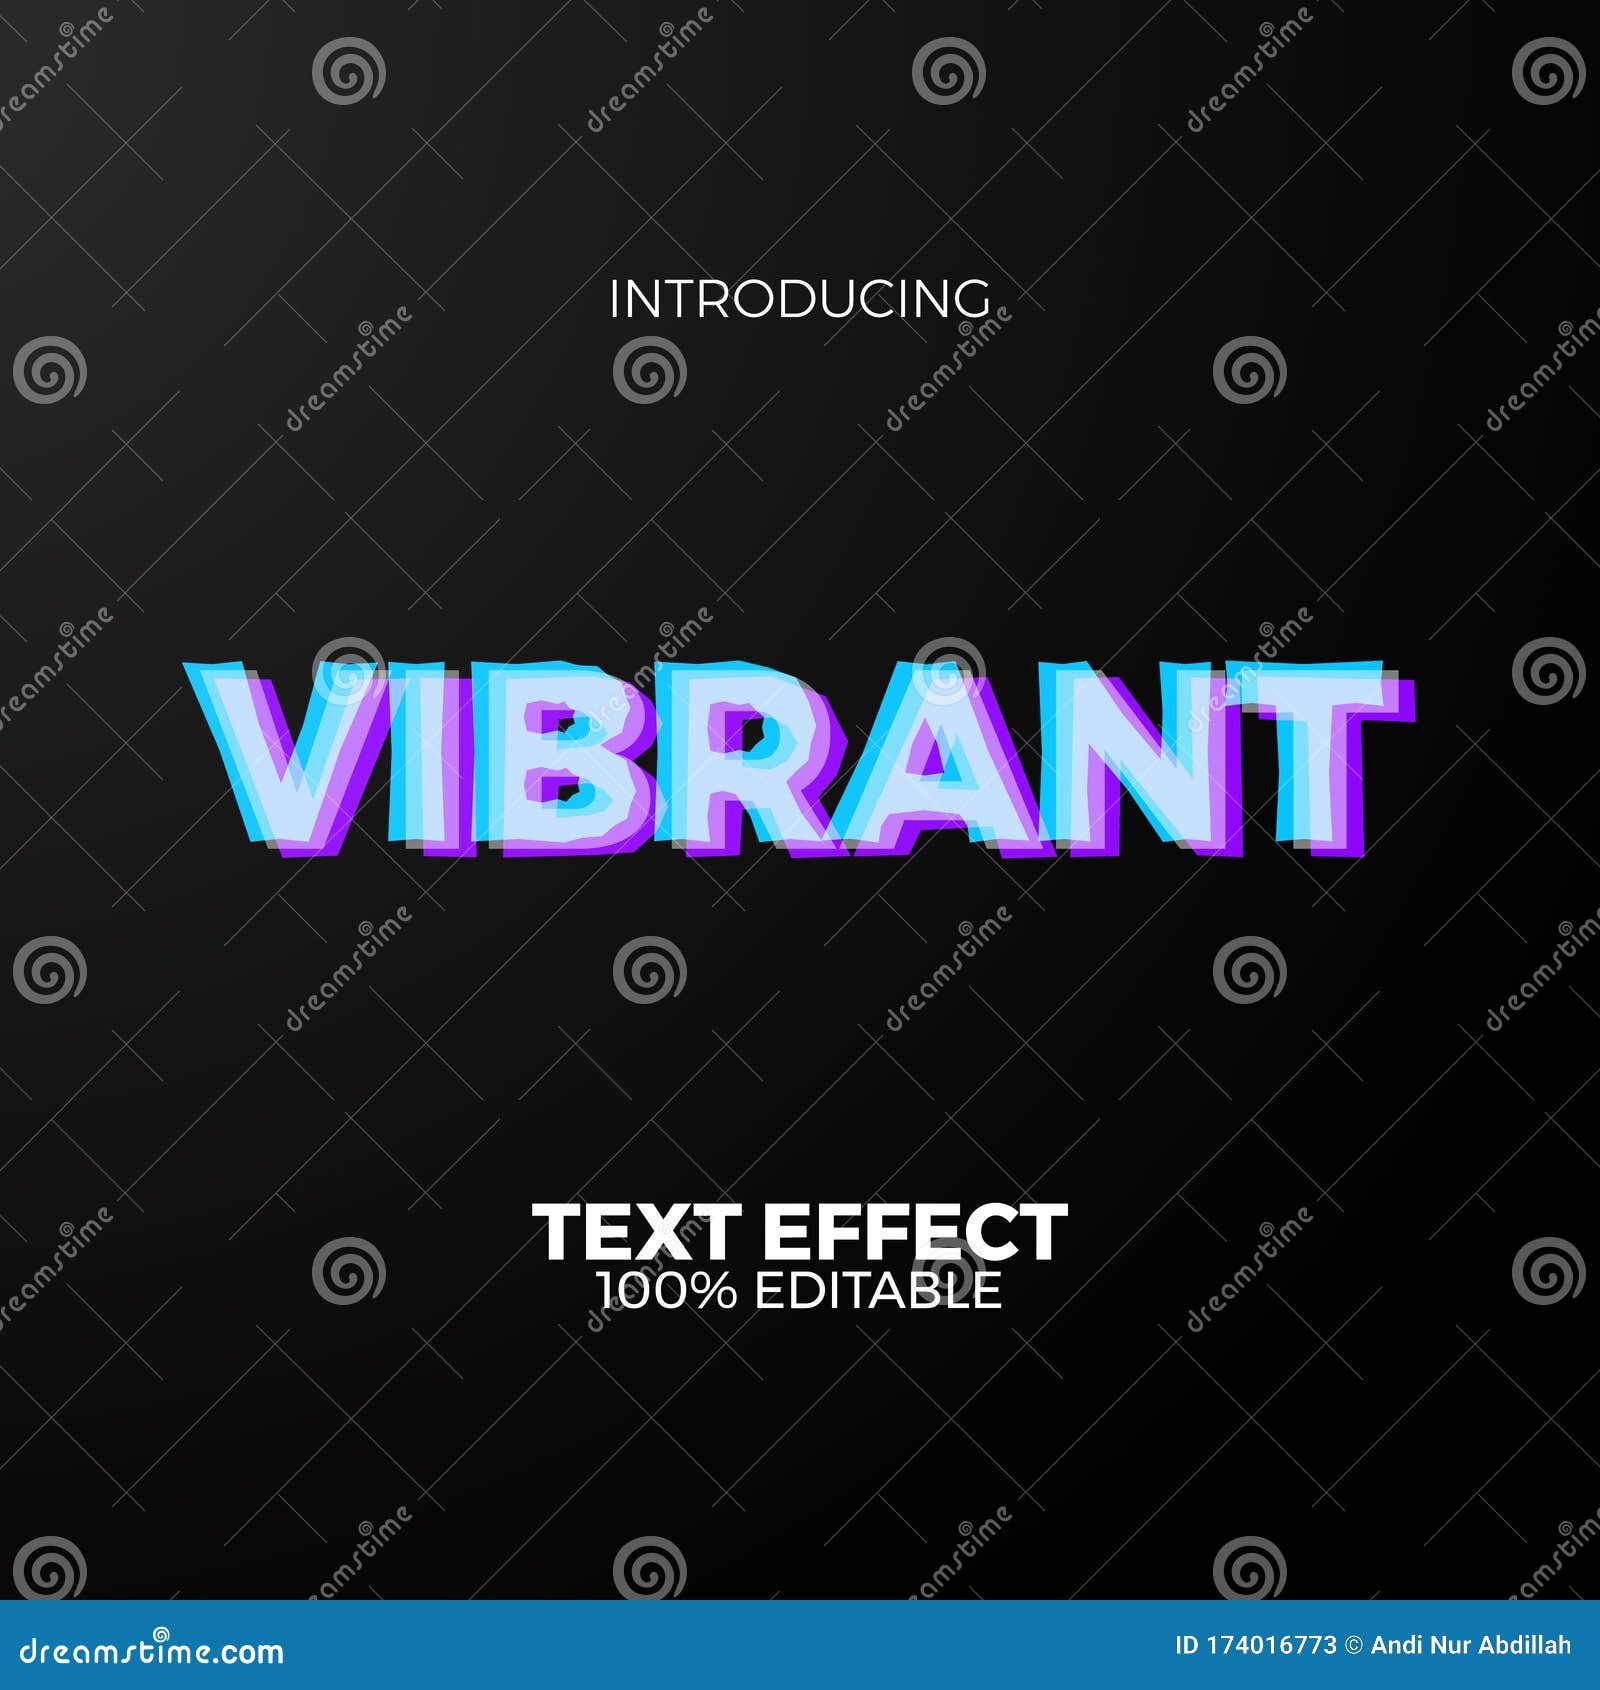 Vibrant Neon Color Editable Text Effect Adobe Illustrator For Future